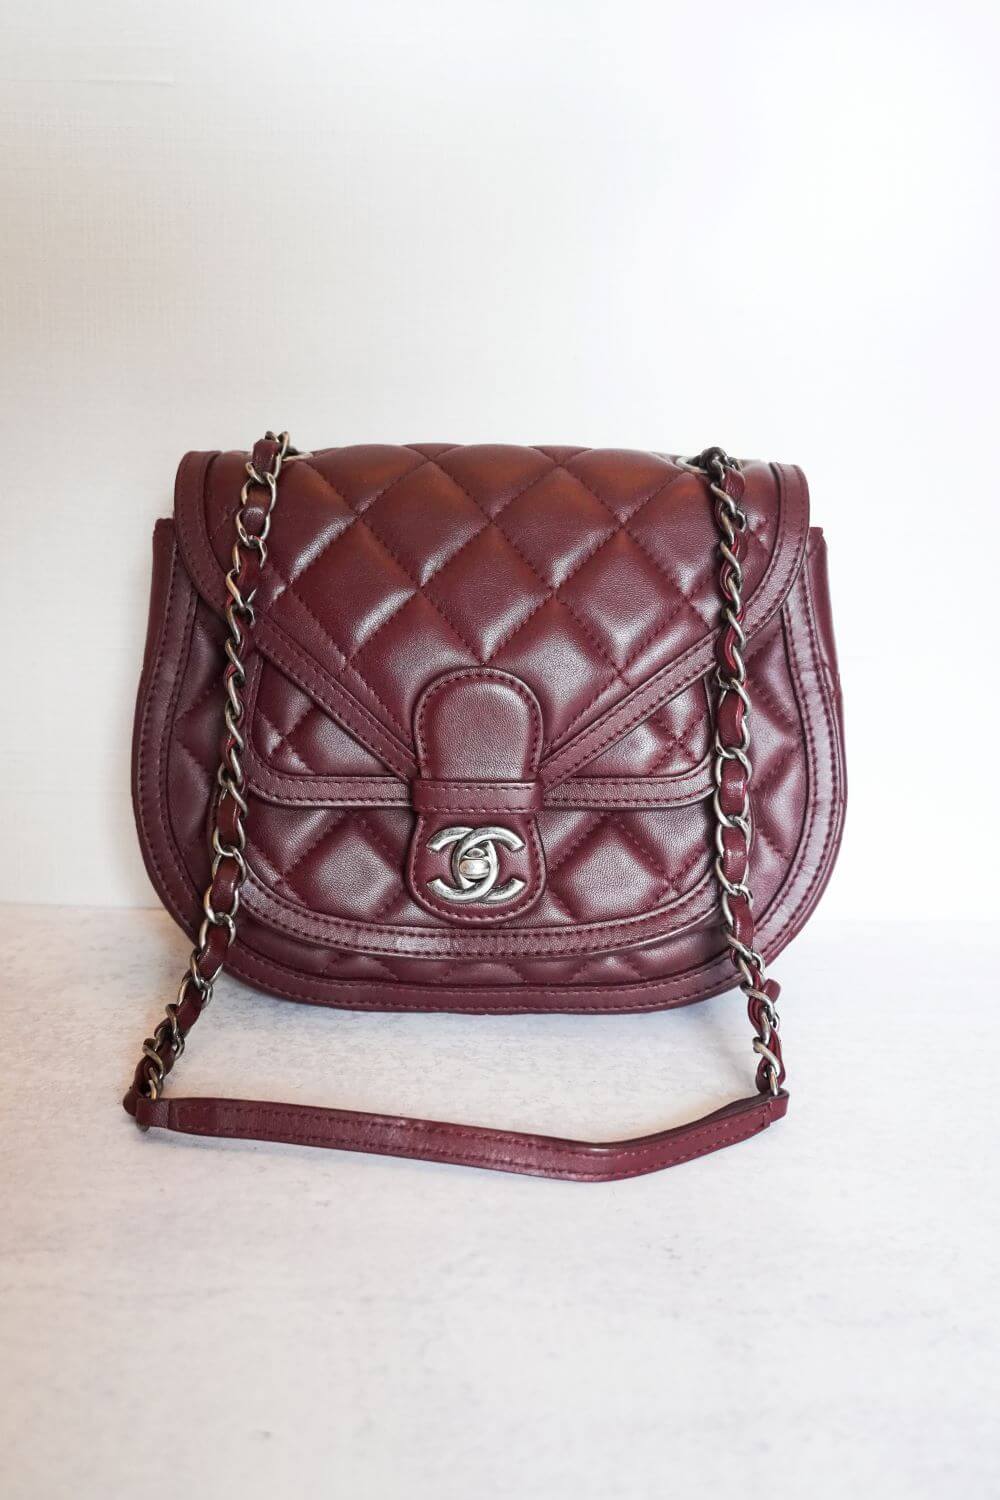 Chanel Quilted Calfskin Saddle Bag - Vala Lavande Vintage